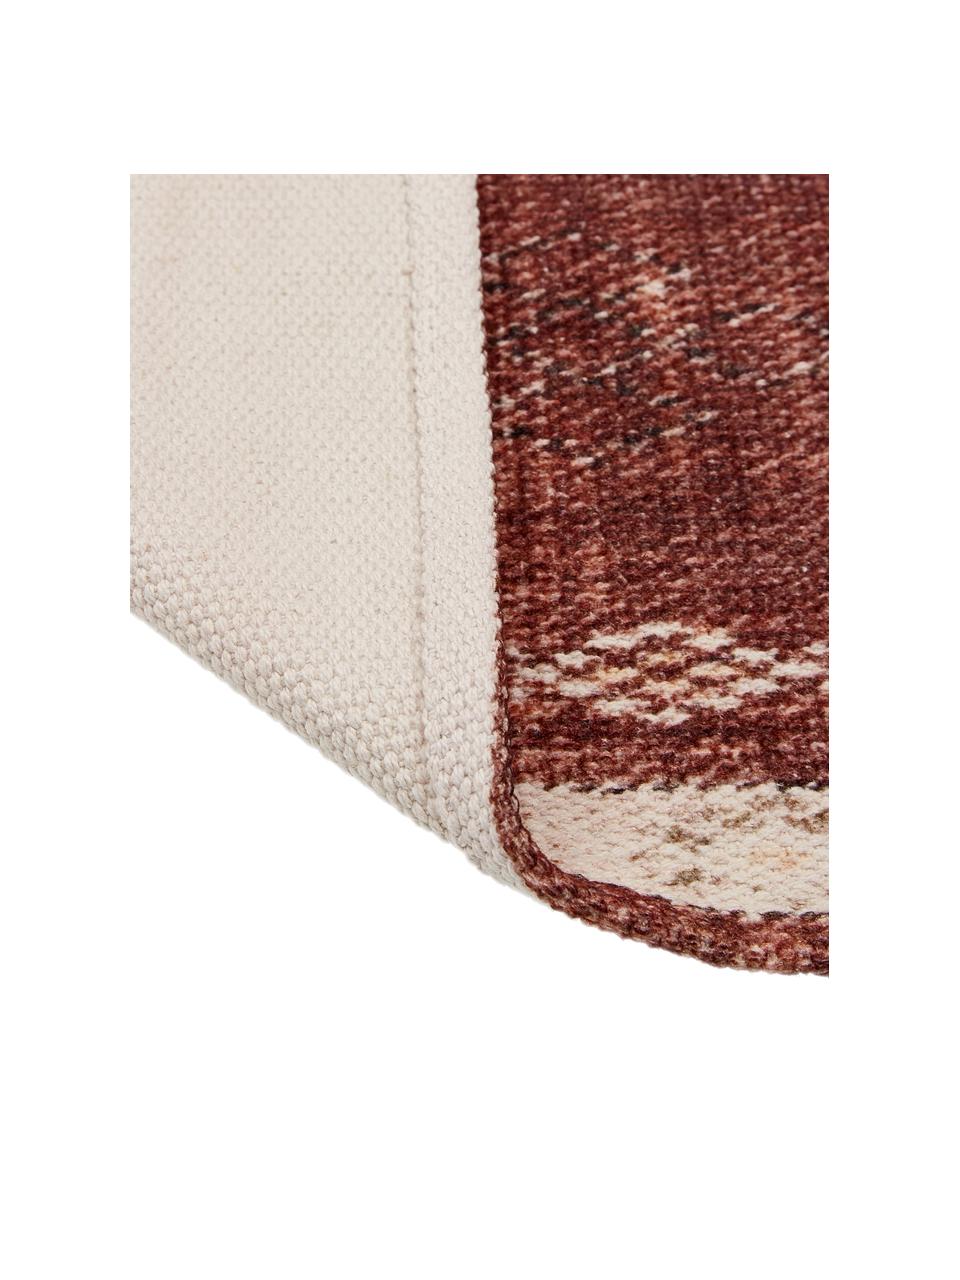 Bieżnik z bawełny Tanger, 100% bawełna, Terakota, odcienie kremowego, S 50 x D 150 cm